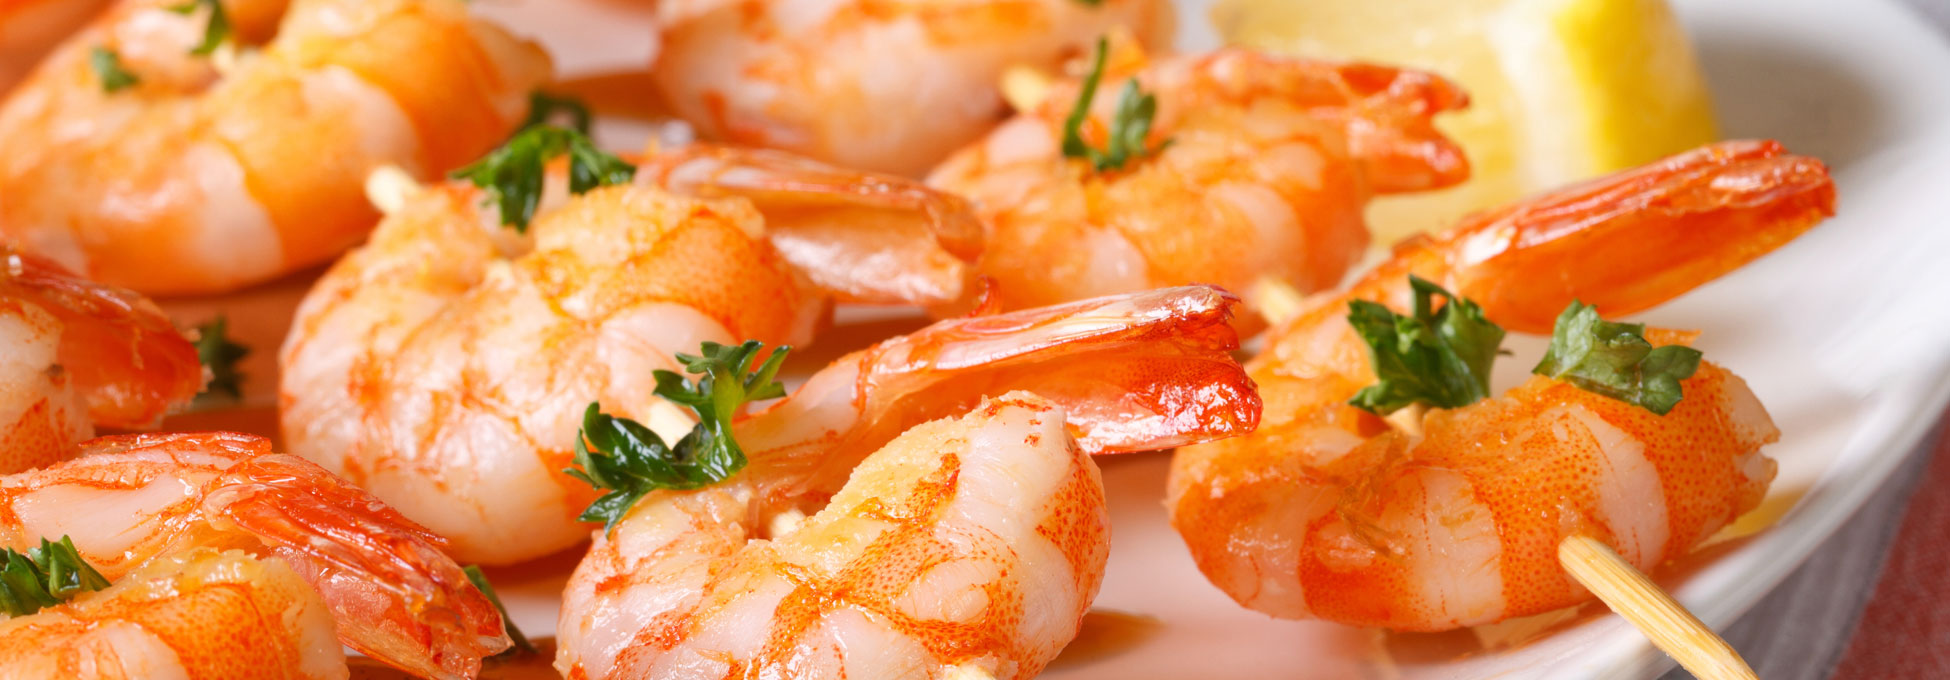 trigs-homepg-shrimp-cooked-lemon-ver2.jpg